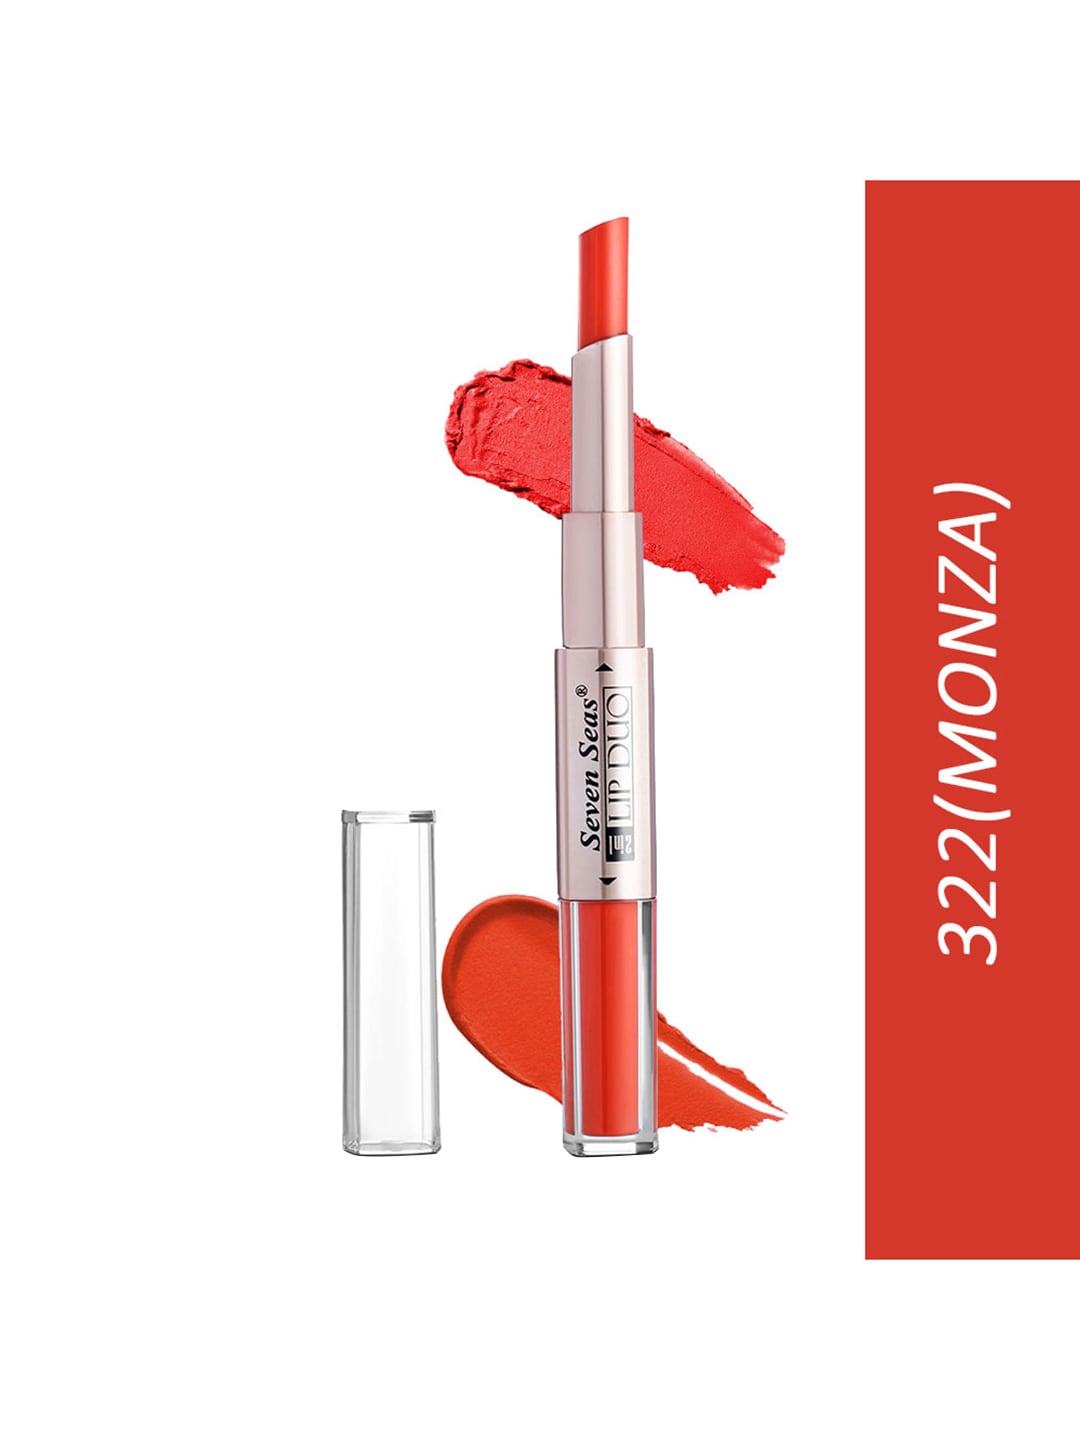 Seven Seas Lip Duo 2 In 1 Liquid Lipstick With Stick Lipstick- 322 Monza Price in India